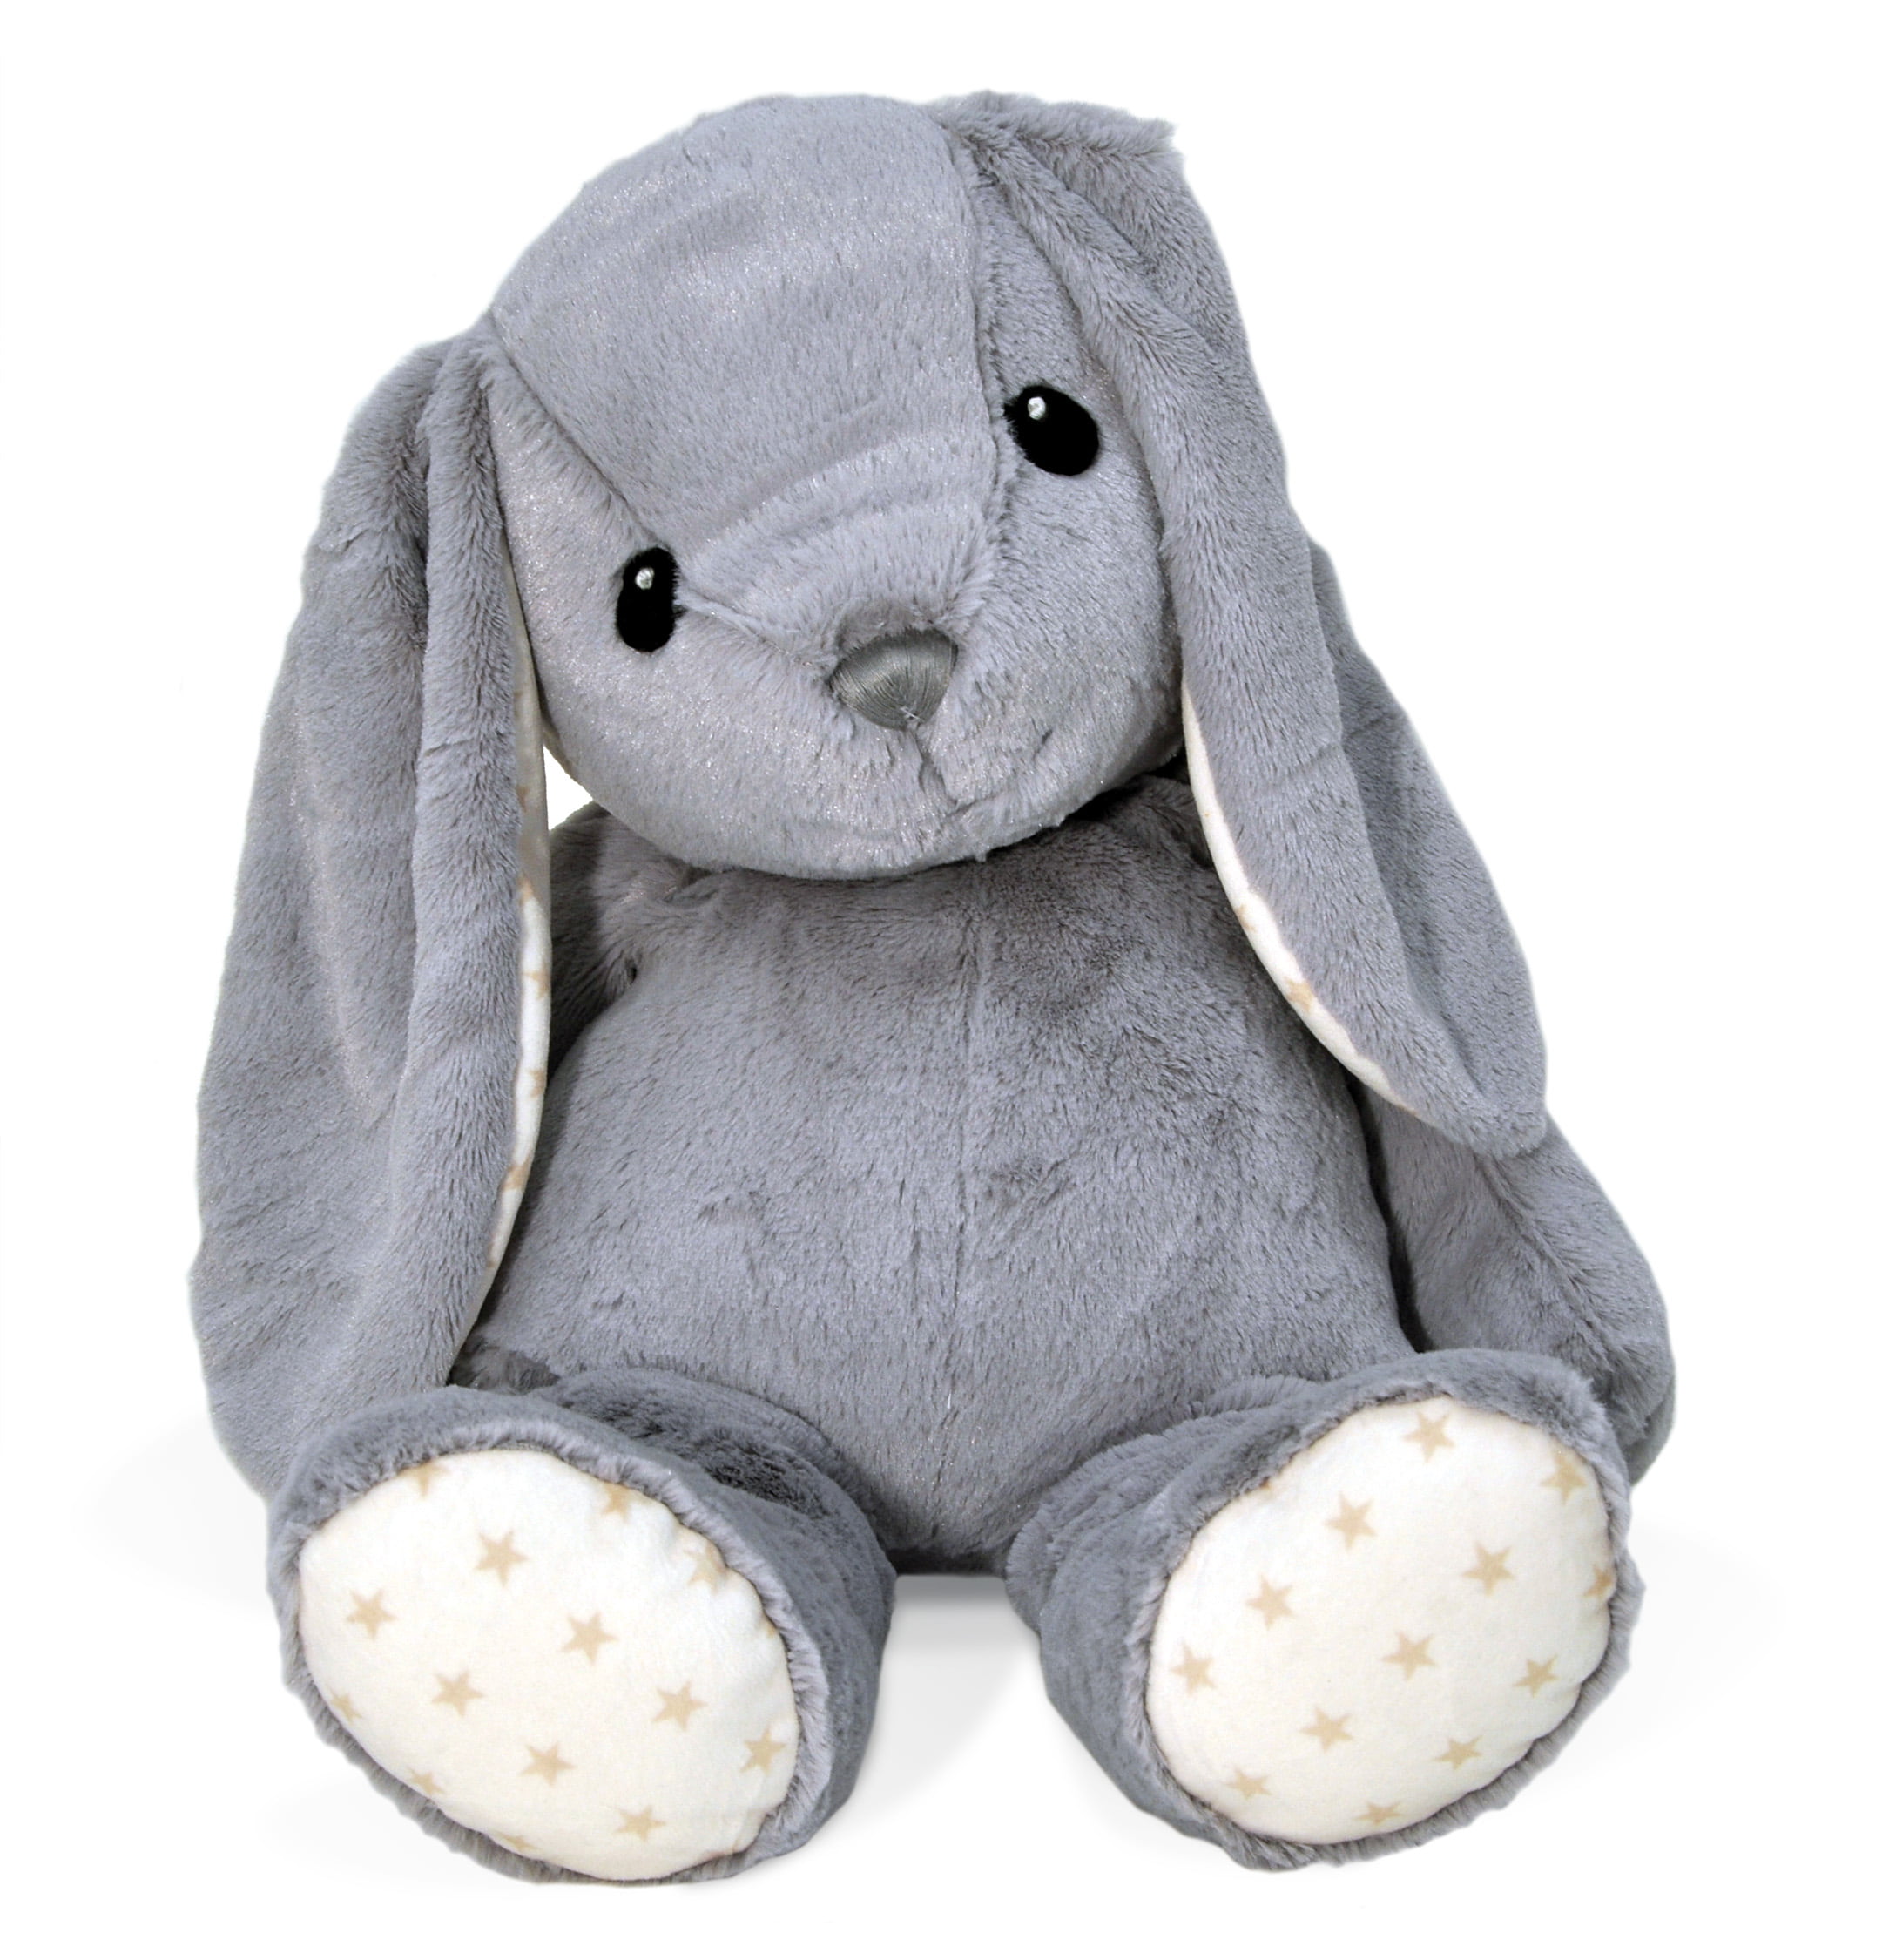 Giant grey rabbit plush • Magic Plush